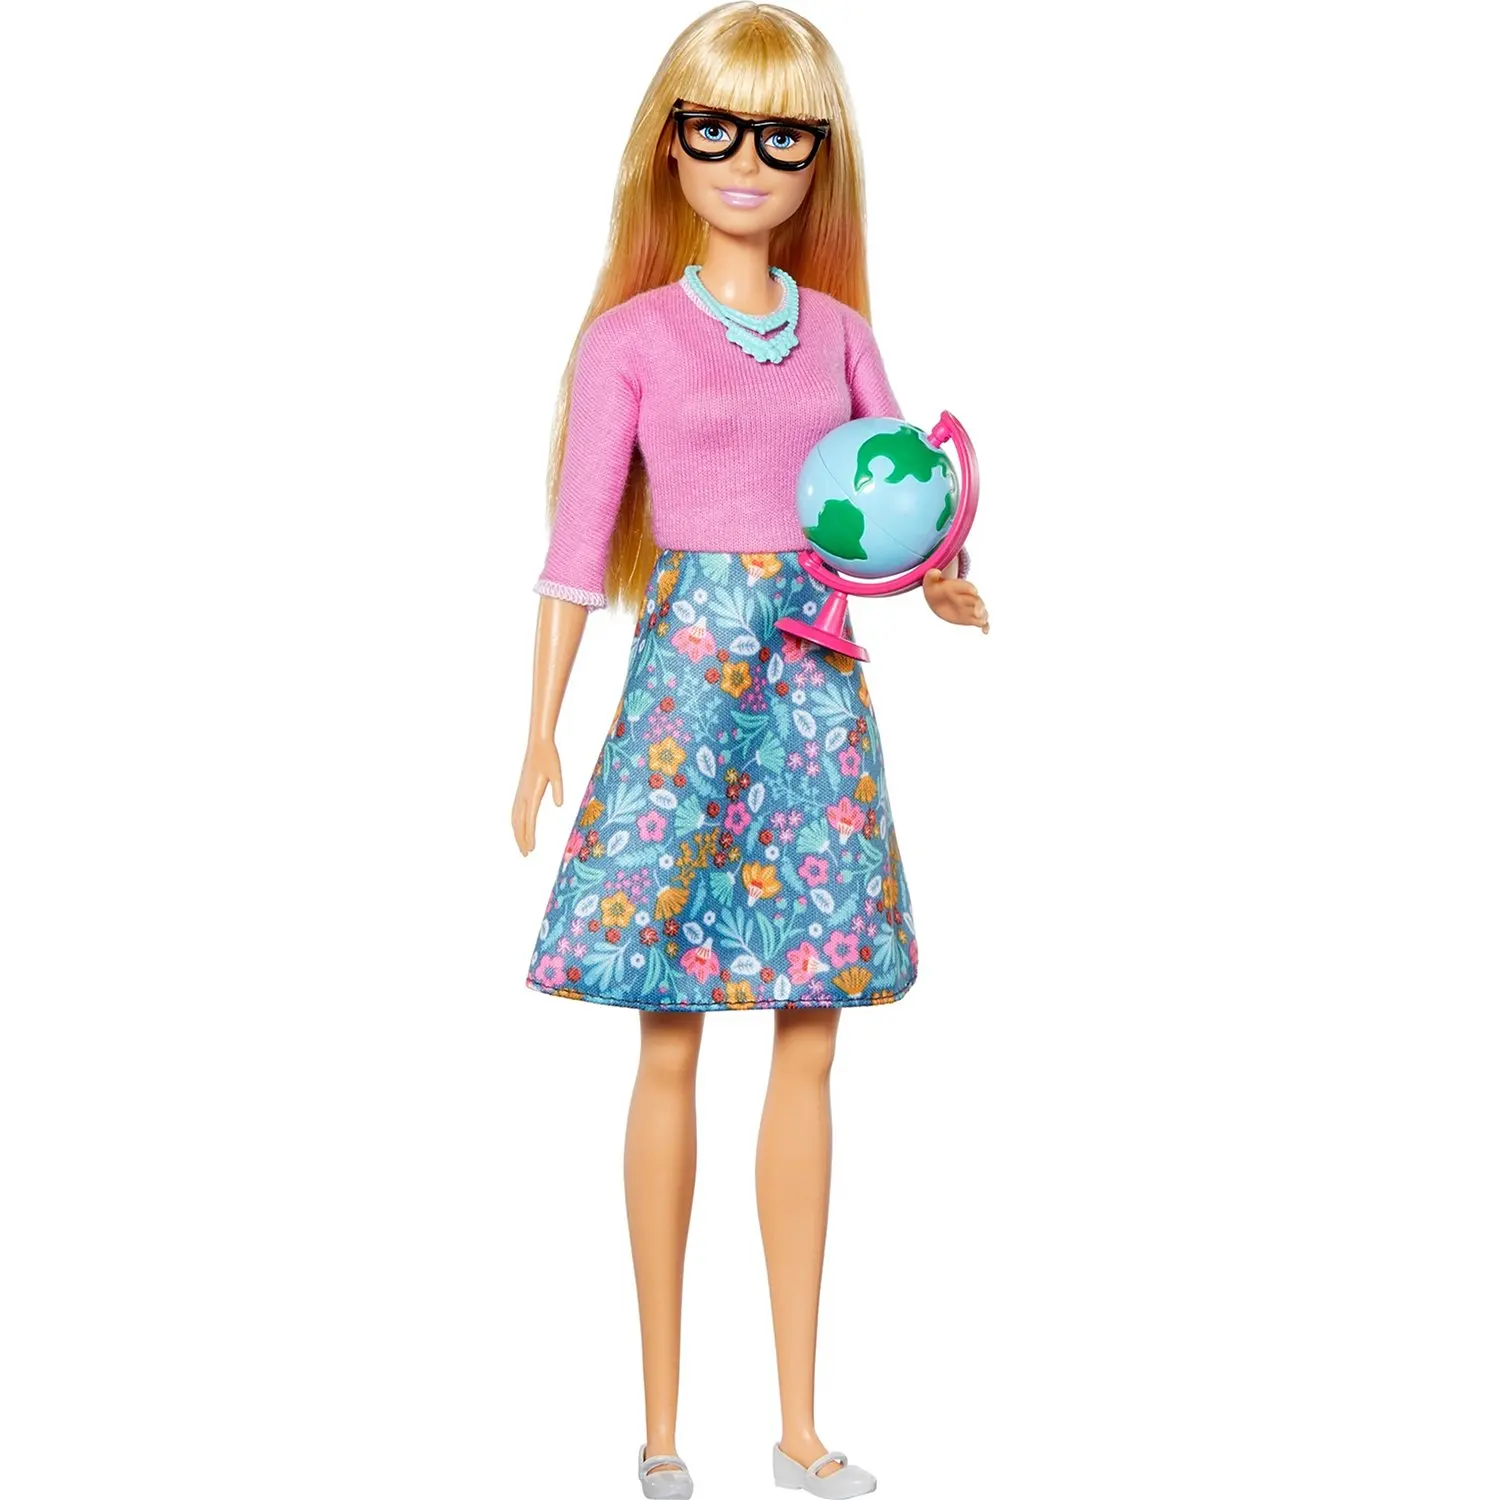 Eu quero ser um professor gjc23 barbie - AliExpress